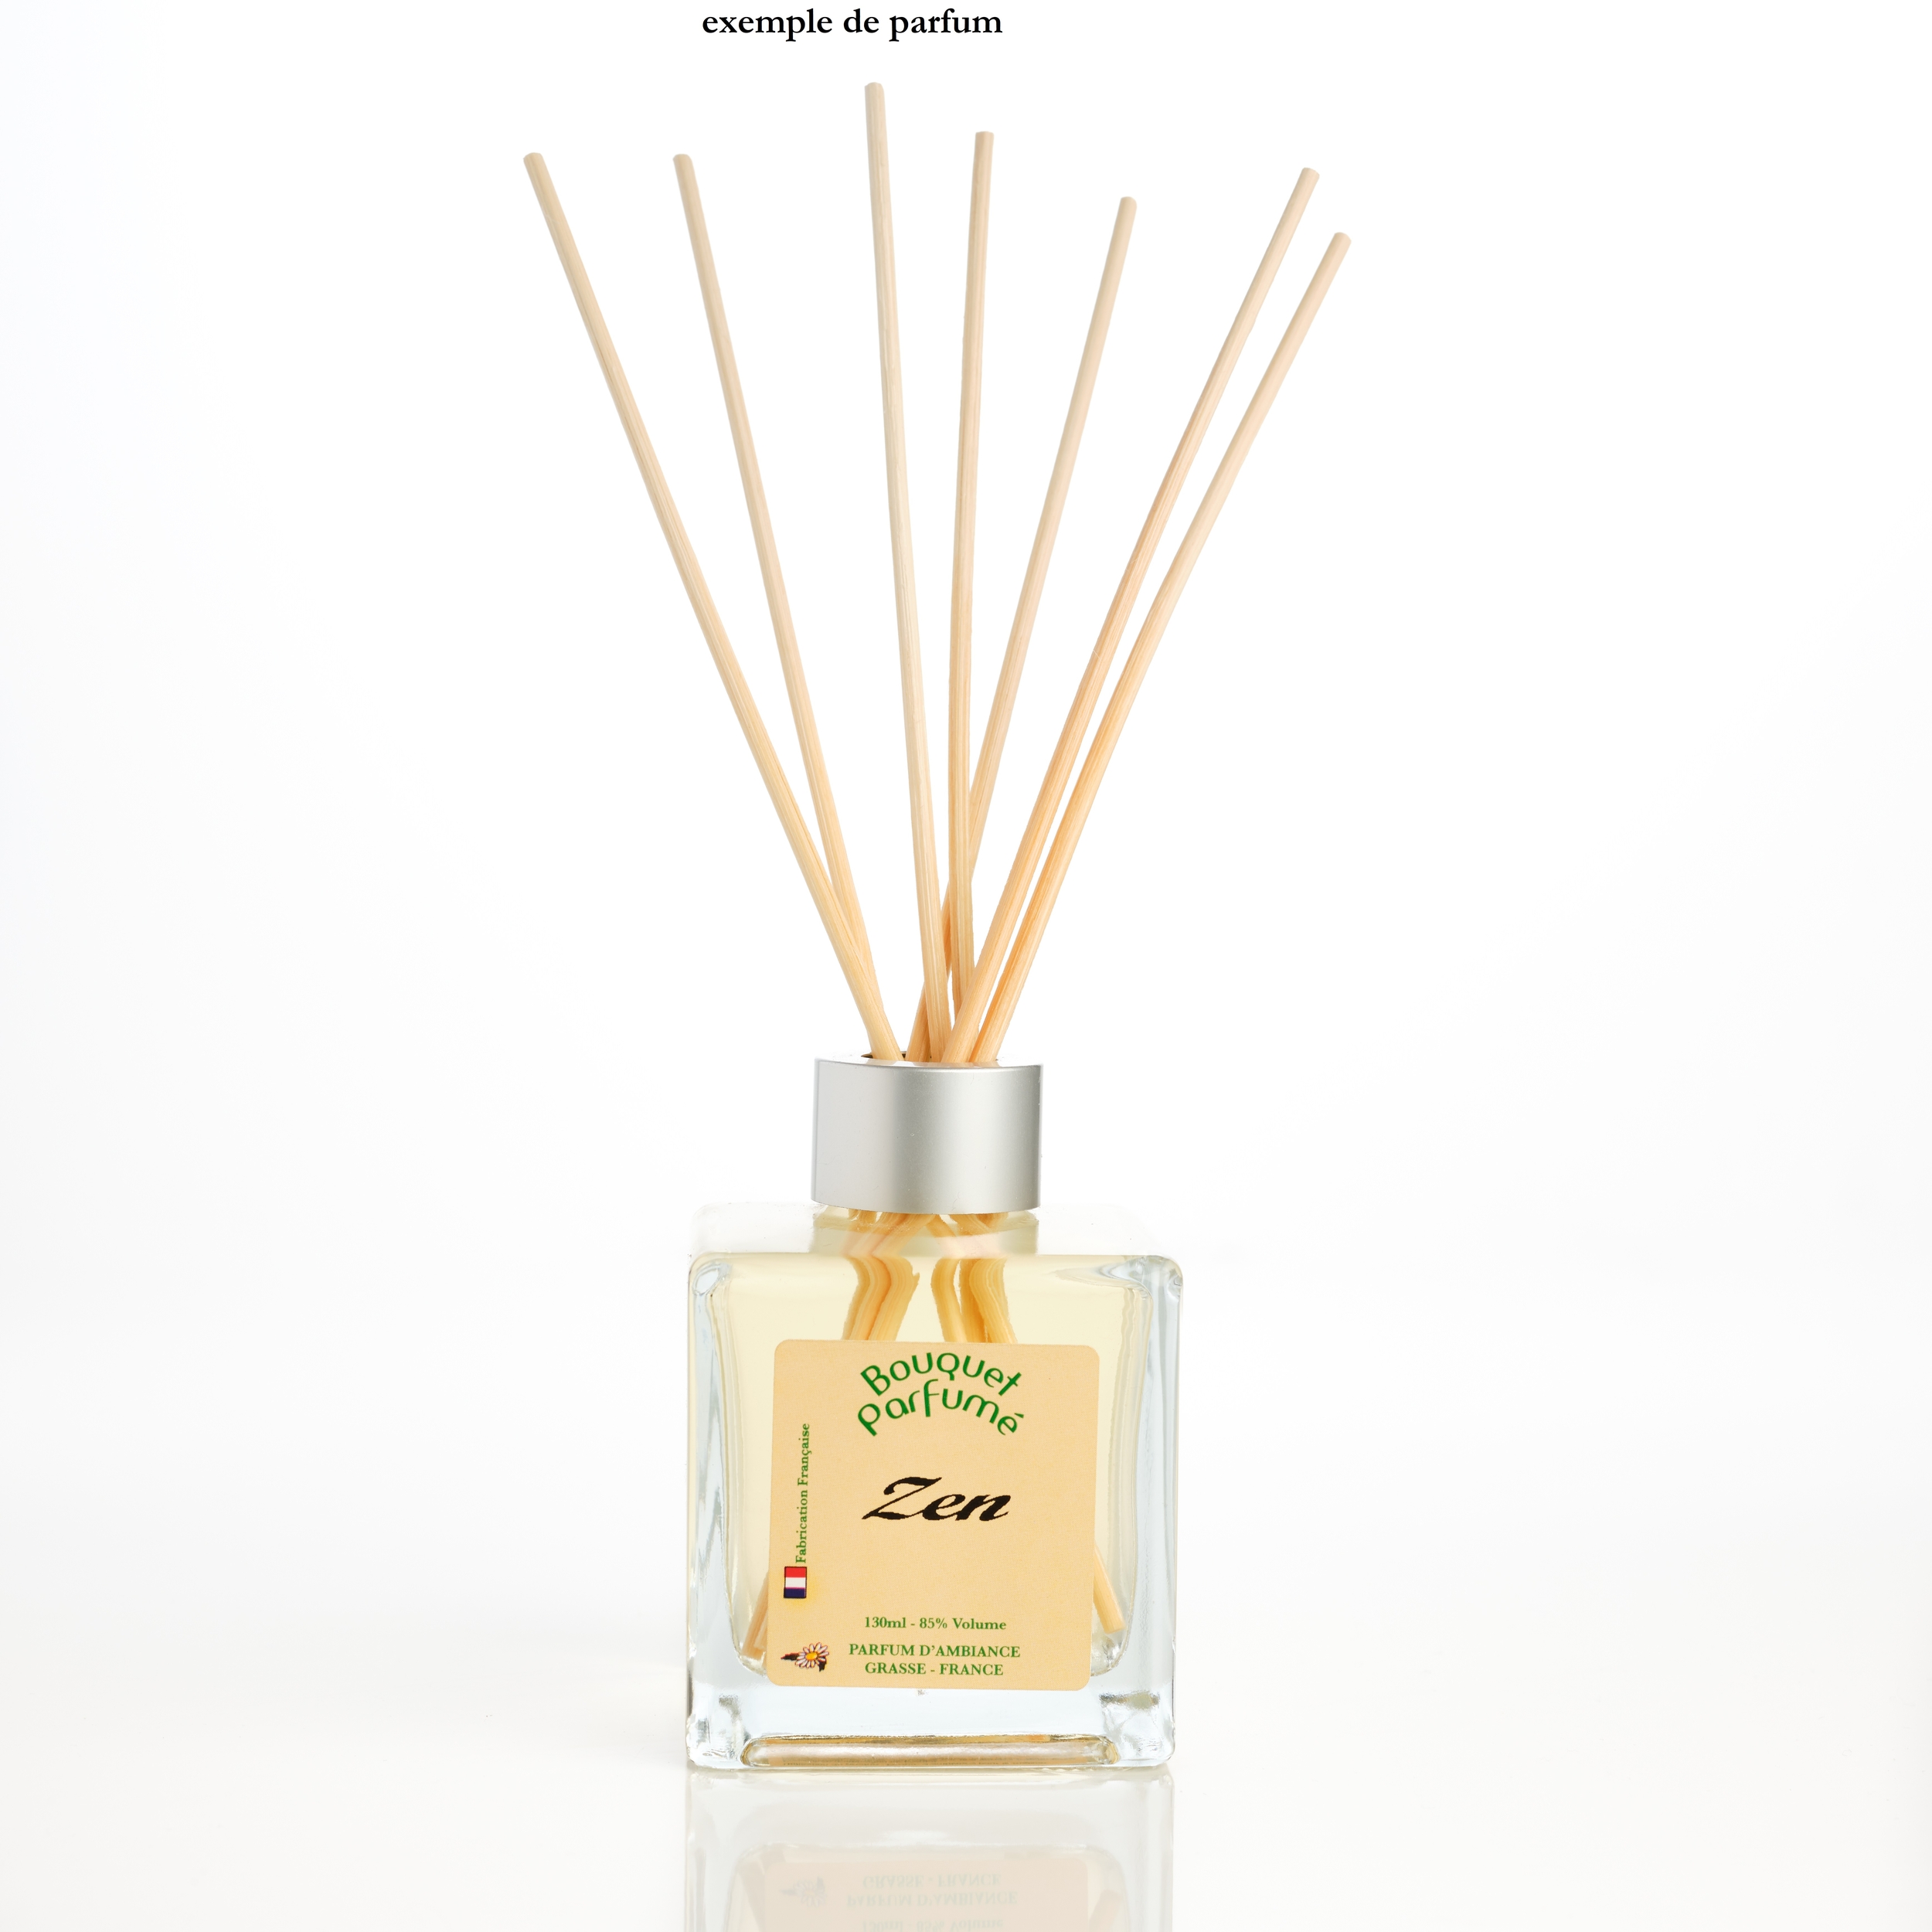 https://media.cdnws.com/_i/152827/610/1355/11/acheter-bouquet-parfume-pas-cher-zen-ambiance-et-interieur-pour-parfumer-la-maison-et-diffuseur-de-parfum.jpeg